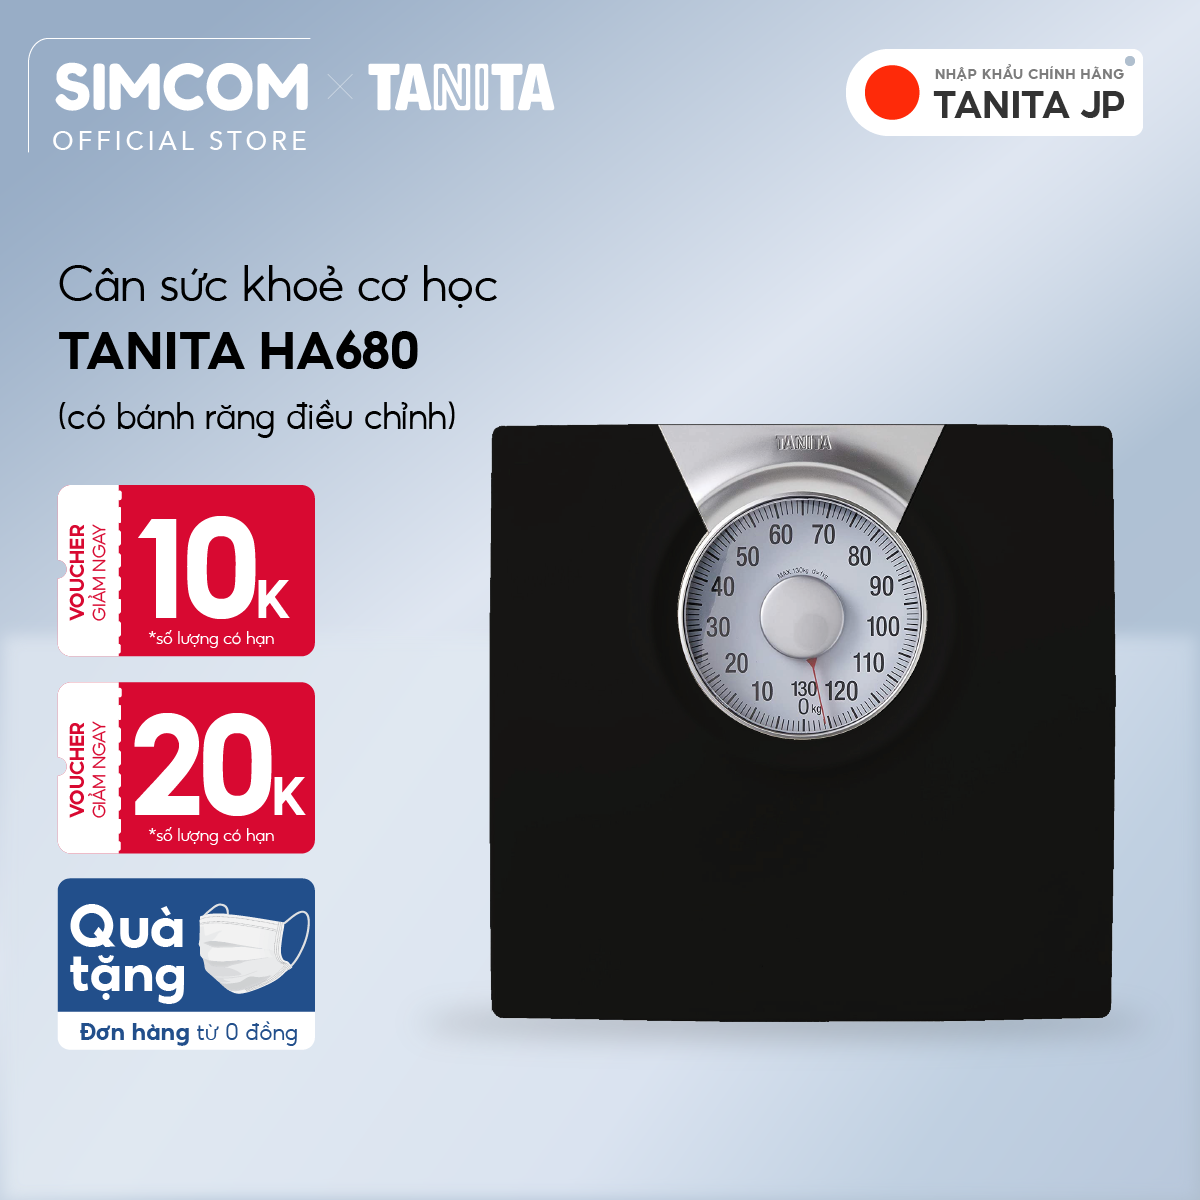 Cân sức khỏe cơ học TANITA HA680,Chính hãng nhật bản,cân điện tử,cân cơ học